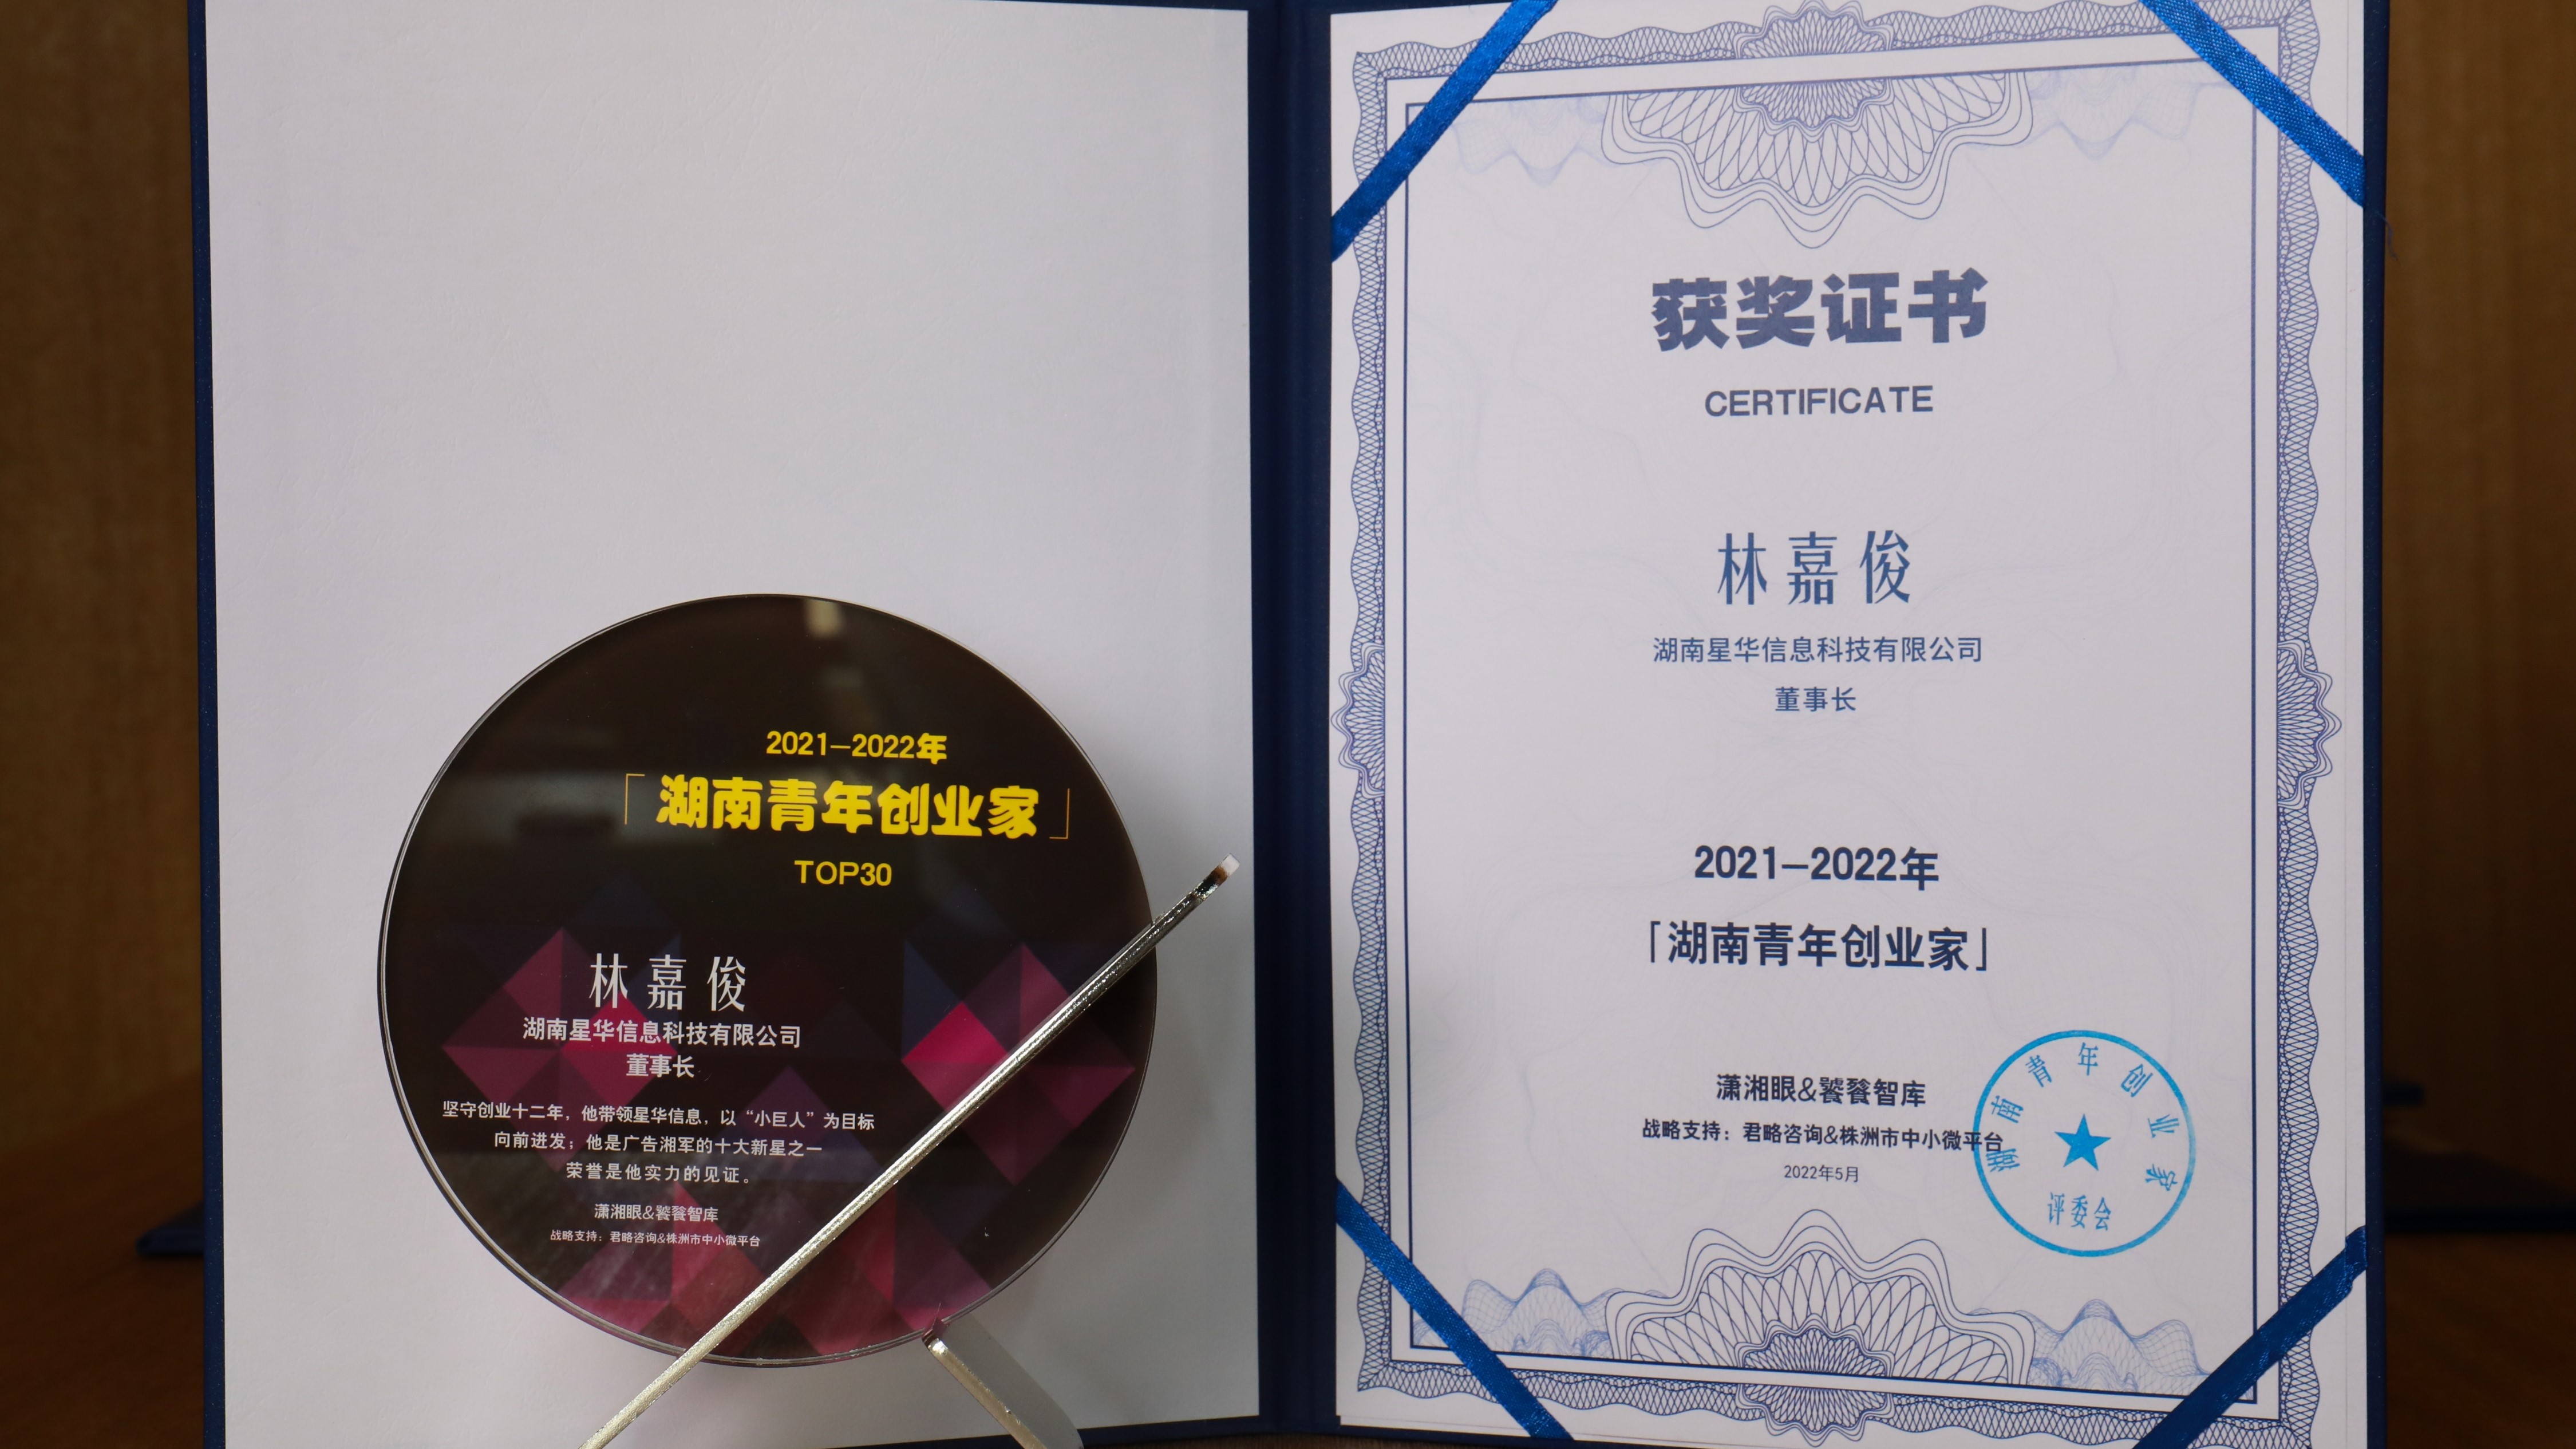 星华信息林嘉俊被授予“2021-2022年度湖南青年创业家”奖